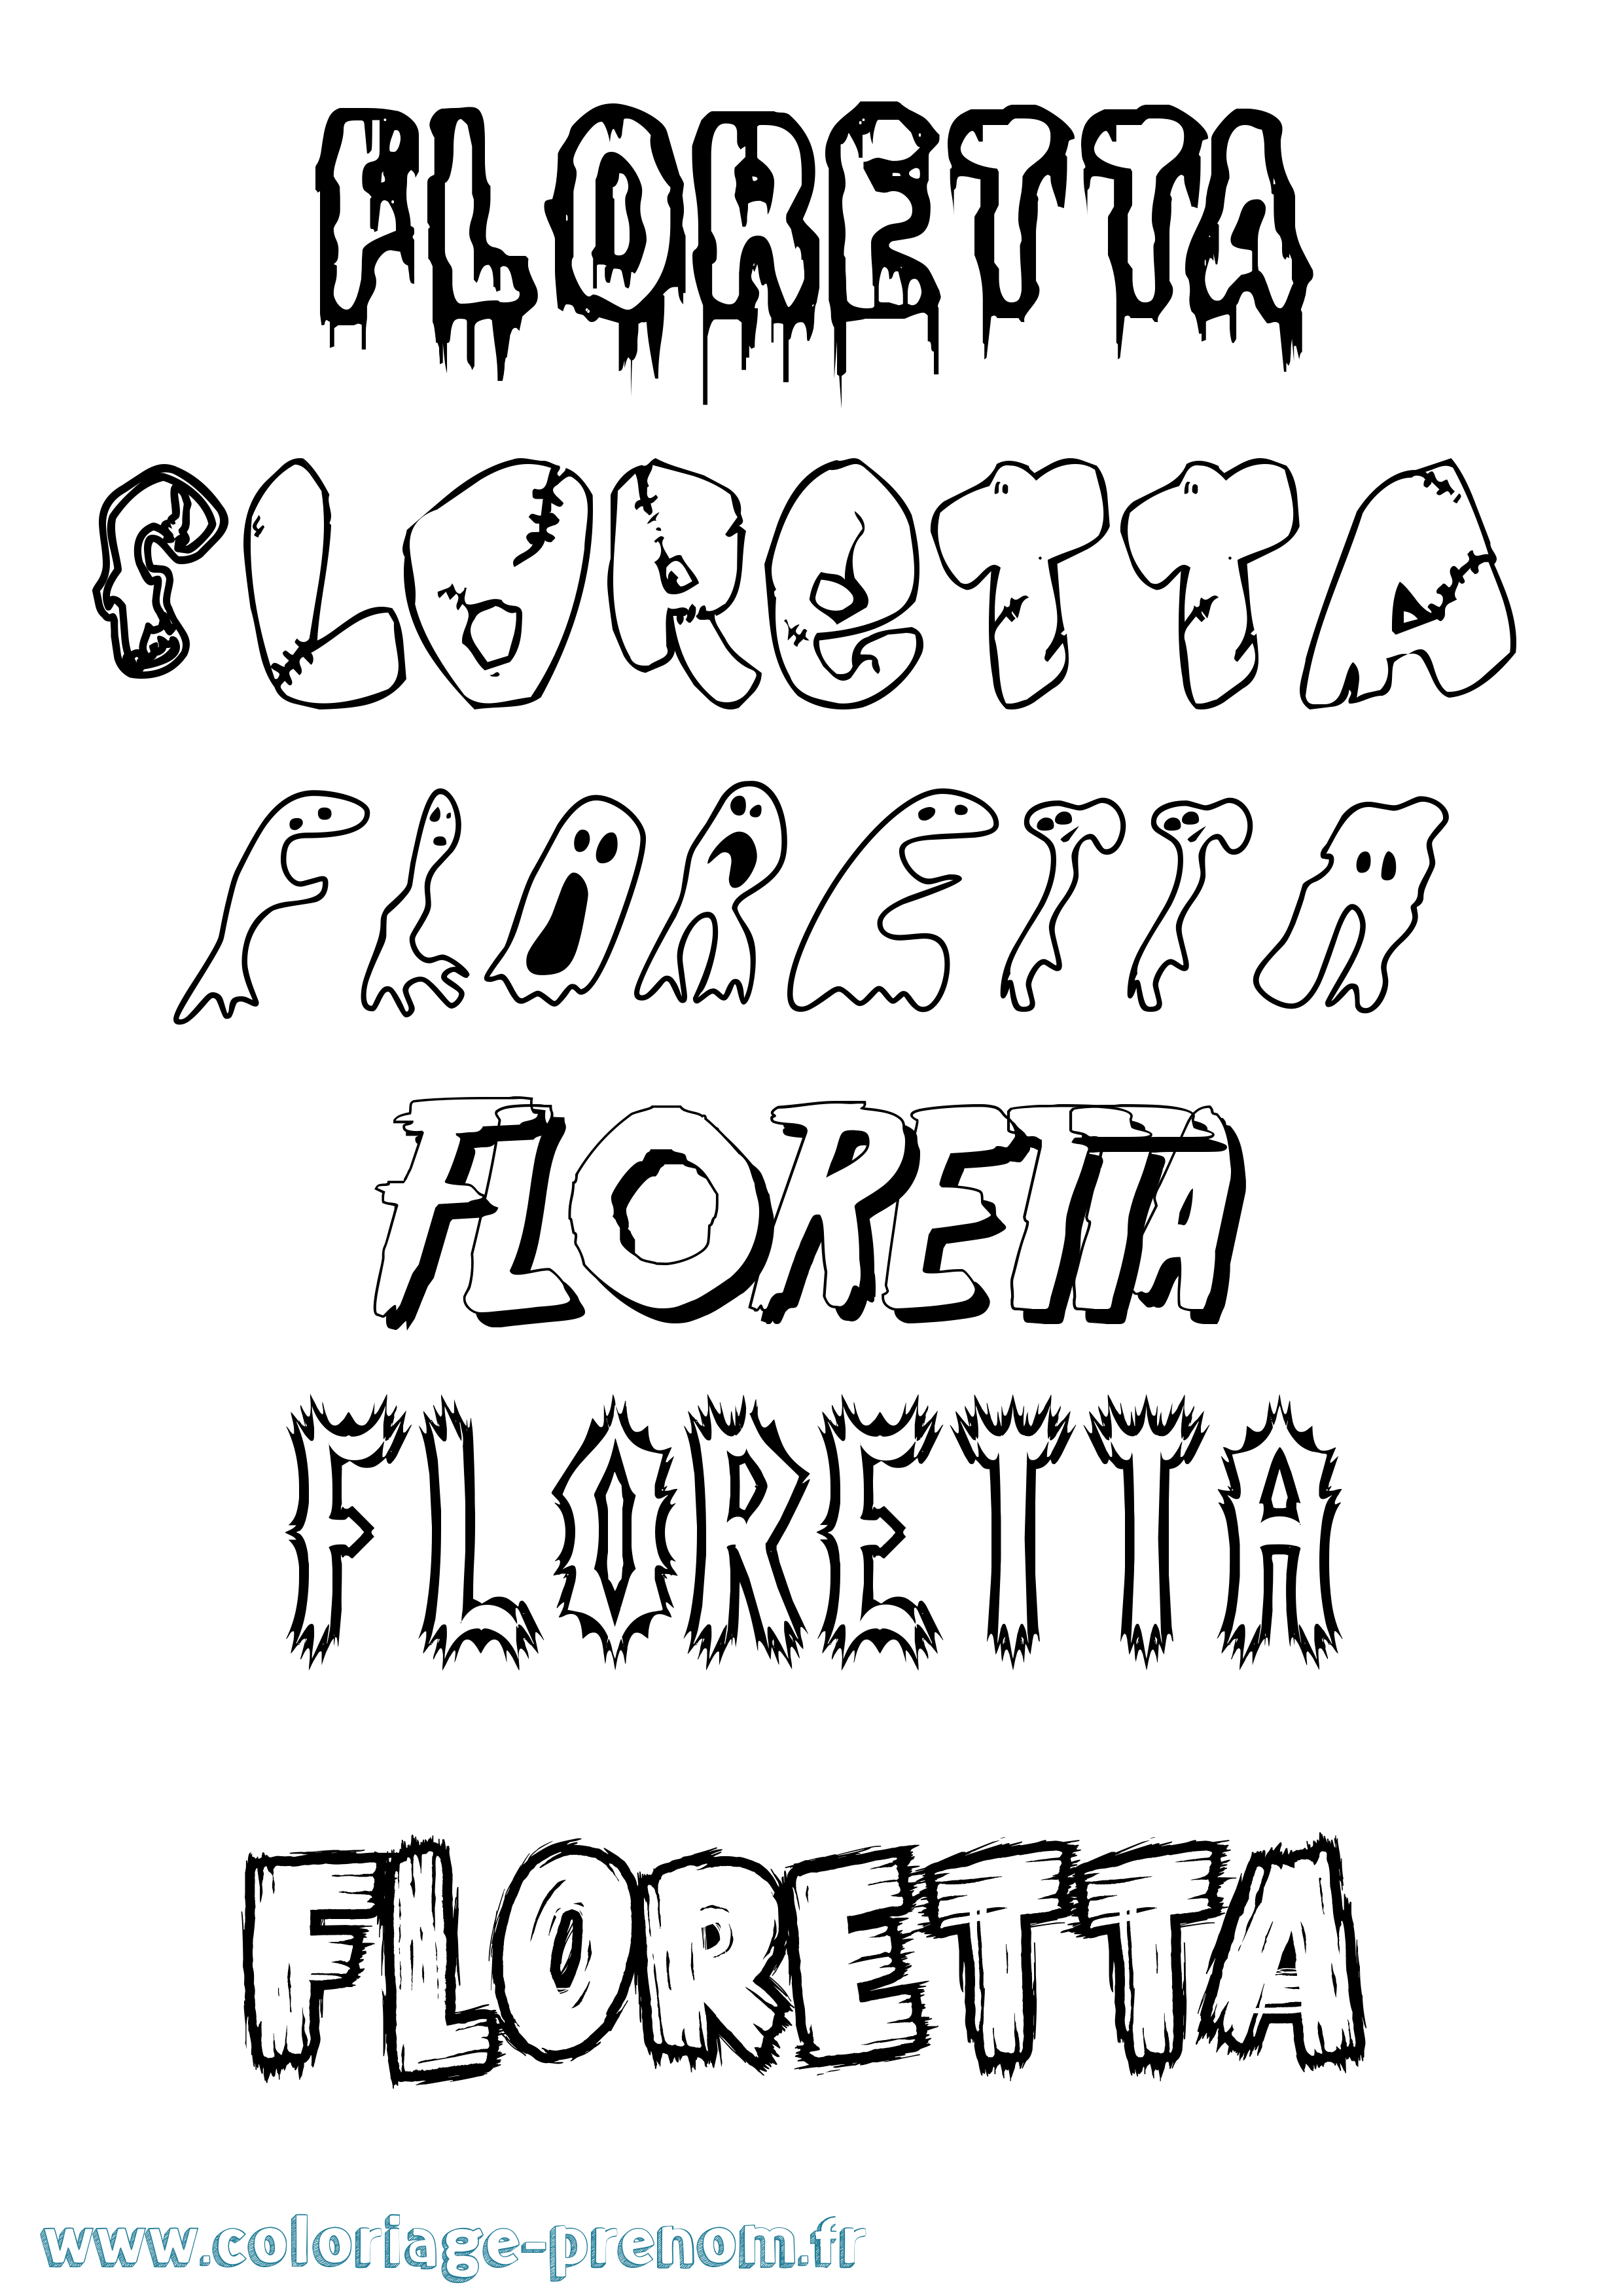 Coloriage prénom Floretta Frisson